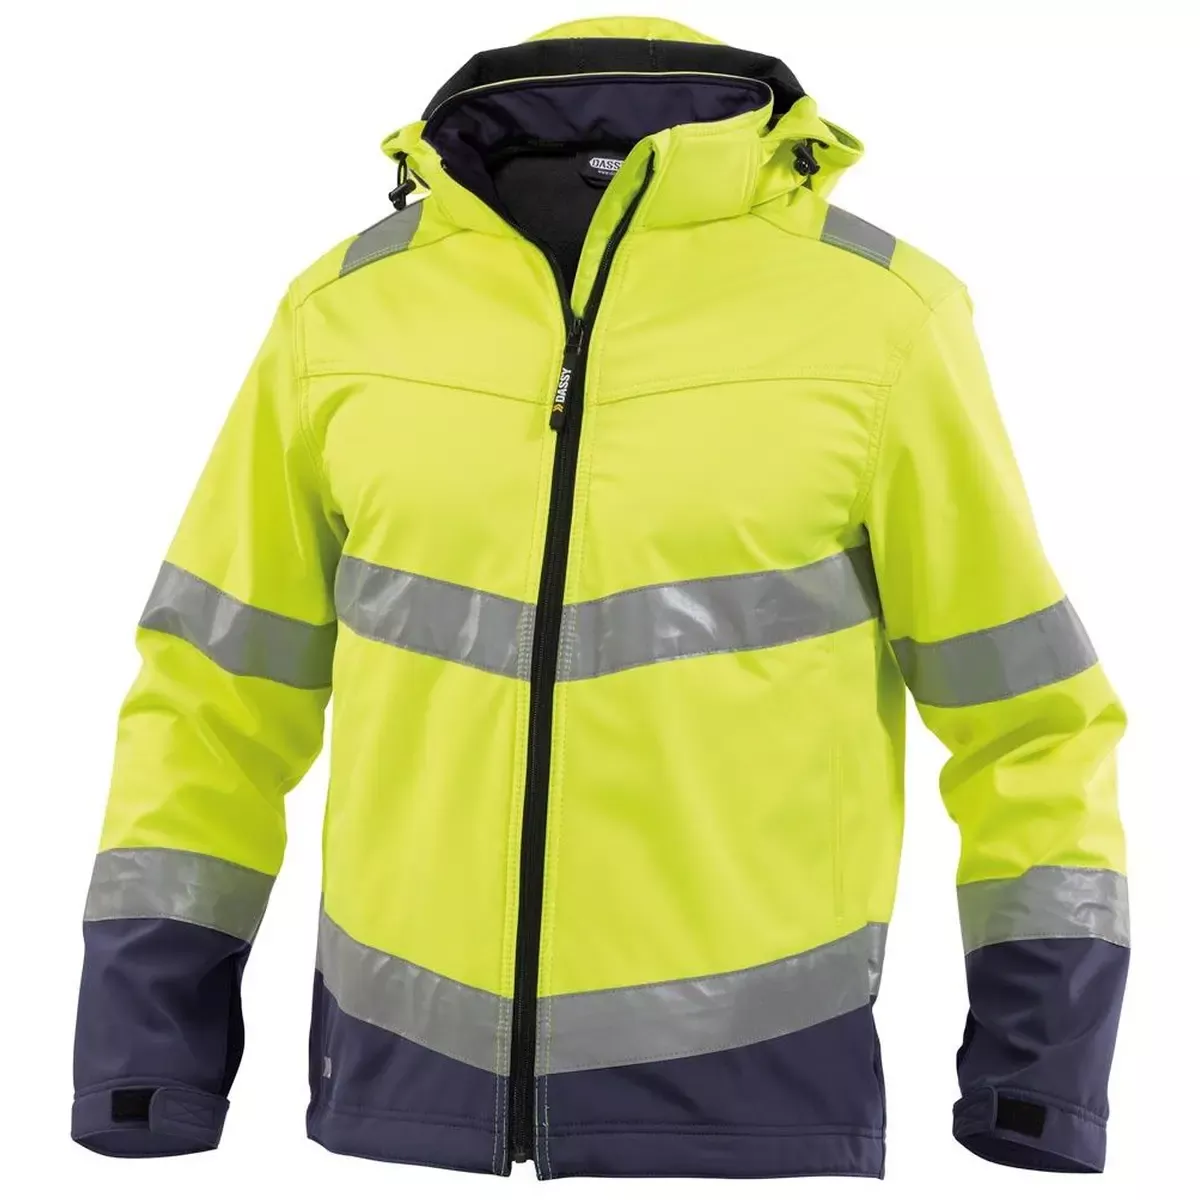 Warnschutz-Softshell-Jacke Malaga, Farbe neongelb/dunkelblau, Gr. 2XL